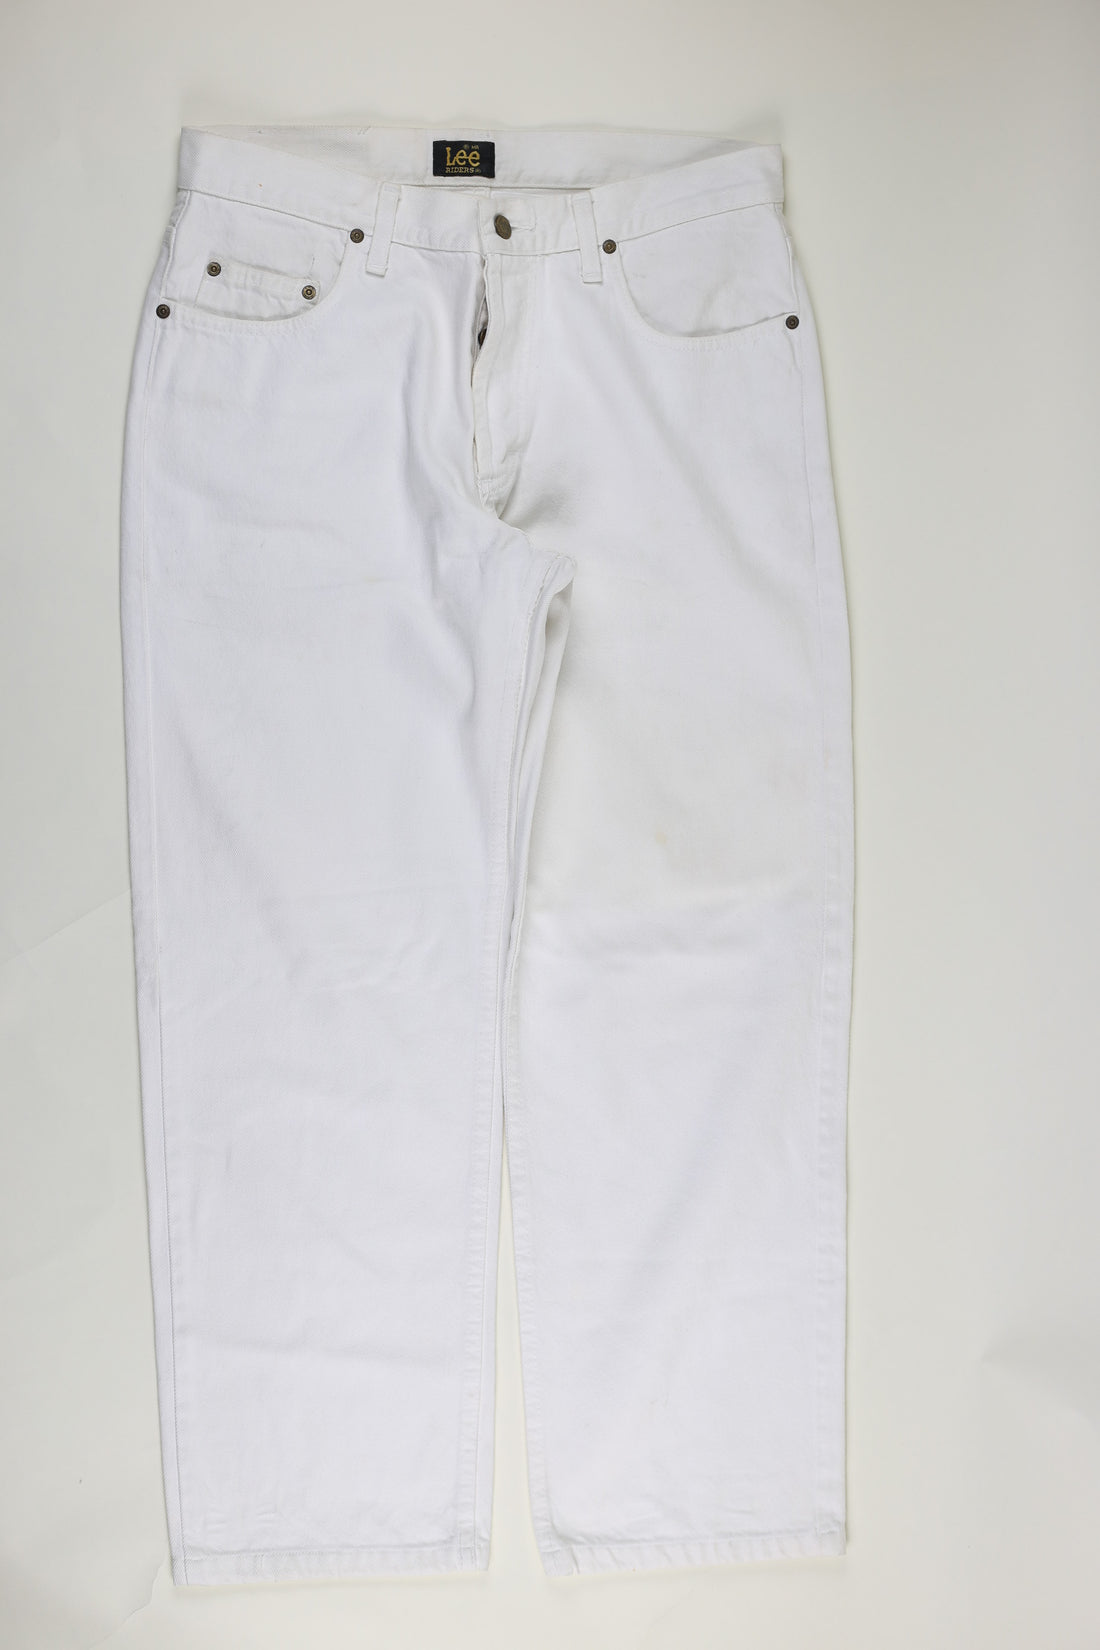 Lee jeans - W33 L29 -